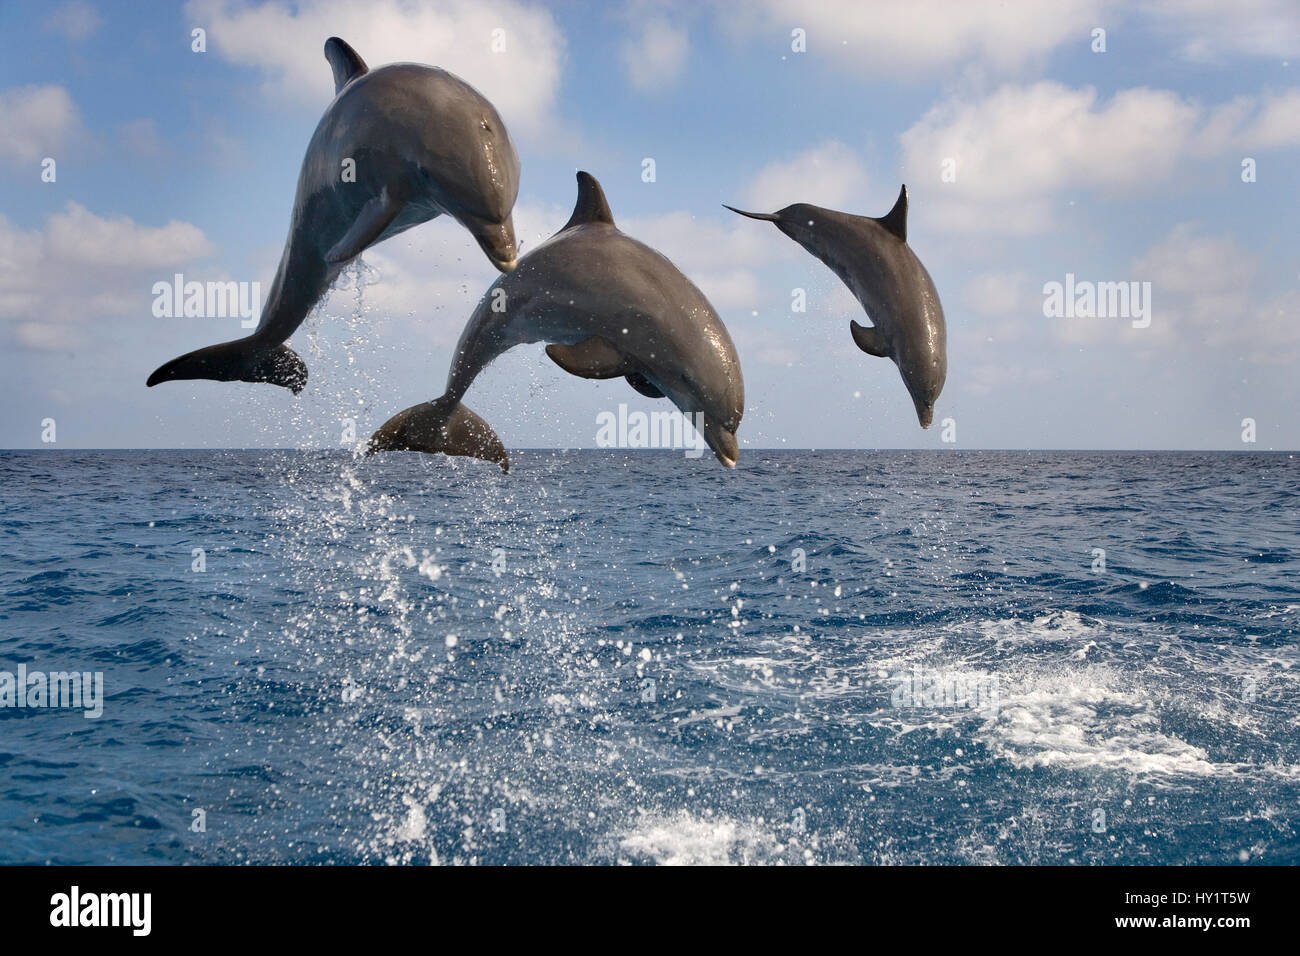 Drei Flasche – Nosed Delphine (Tursiops Truncatus) verletzt, Bay Islands, Honduras, Caribbean. Kontrollierten Bedingungen. Stockfoto